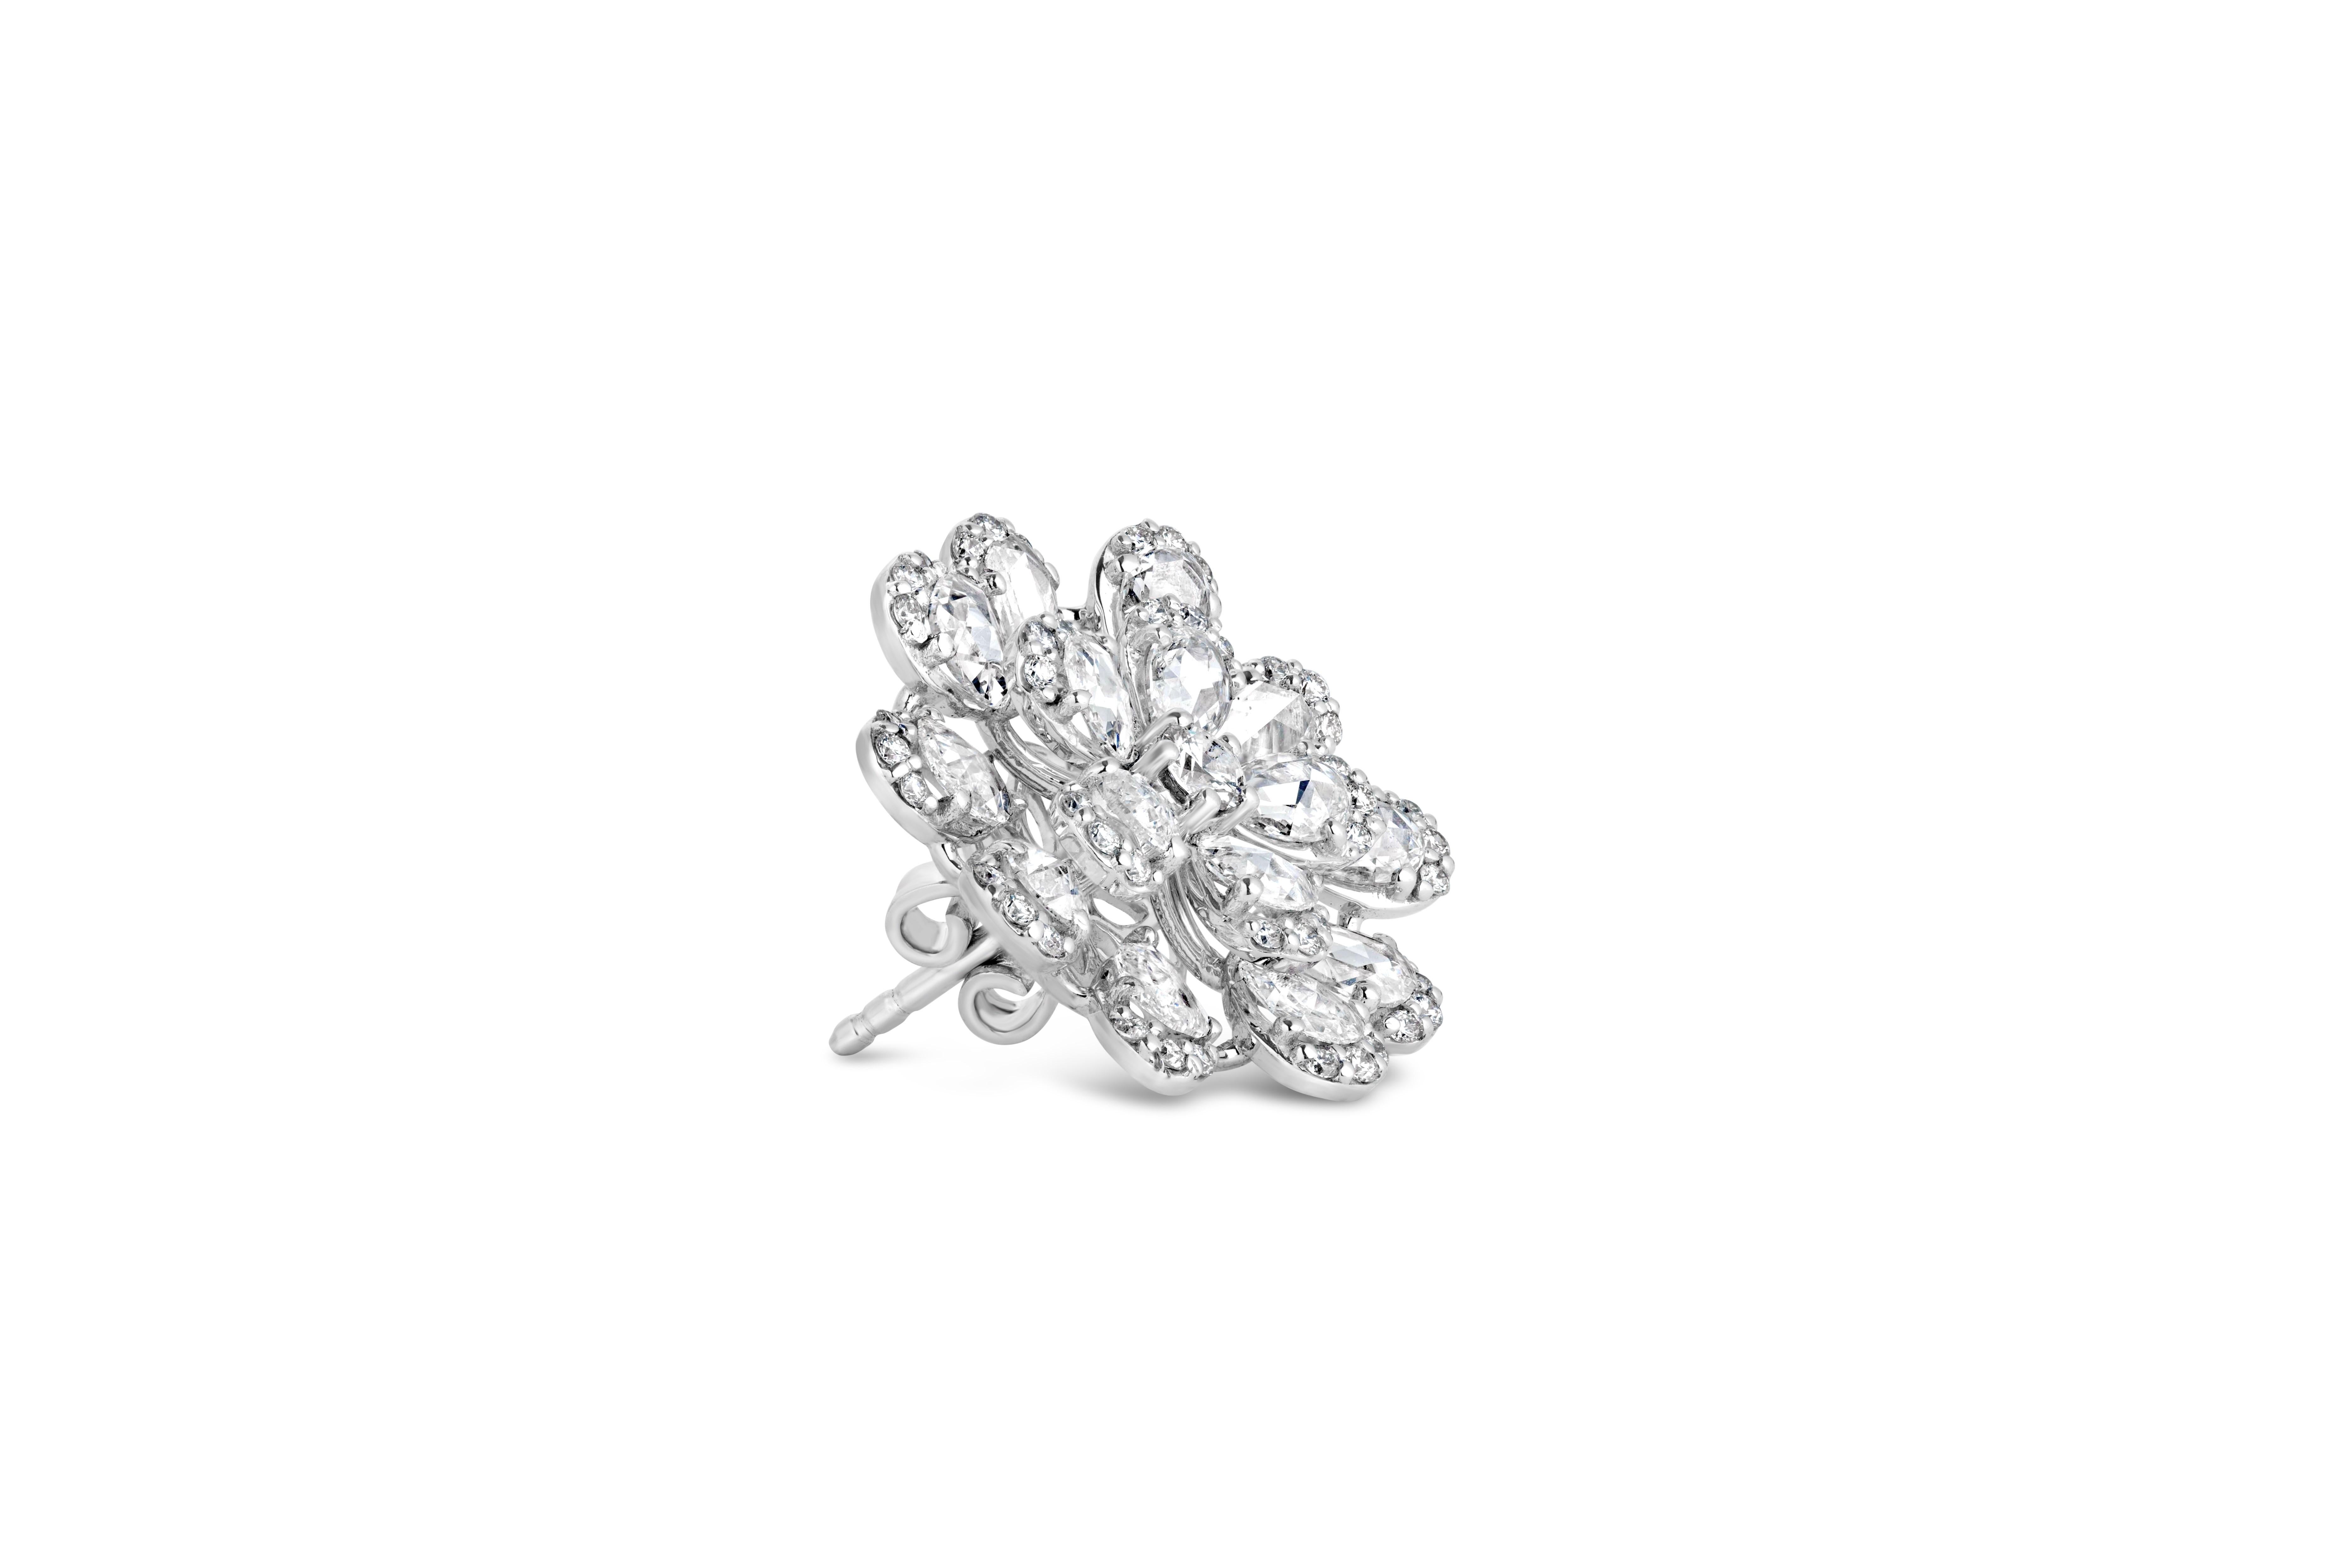 Voici nos Blossom Eleg, une paire étonnante qui allie l'élégance intemporelle des diamants ronds au charme unique des diamants rocaille. Ces boucles d'oreilles exquises présentent un diamant rond d'un poids total de 0,86 carats et un époustouflant